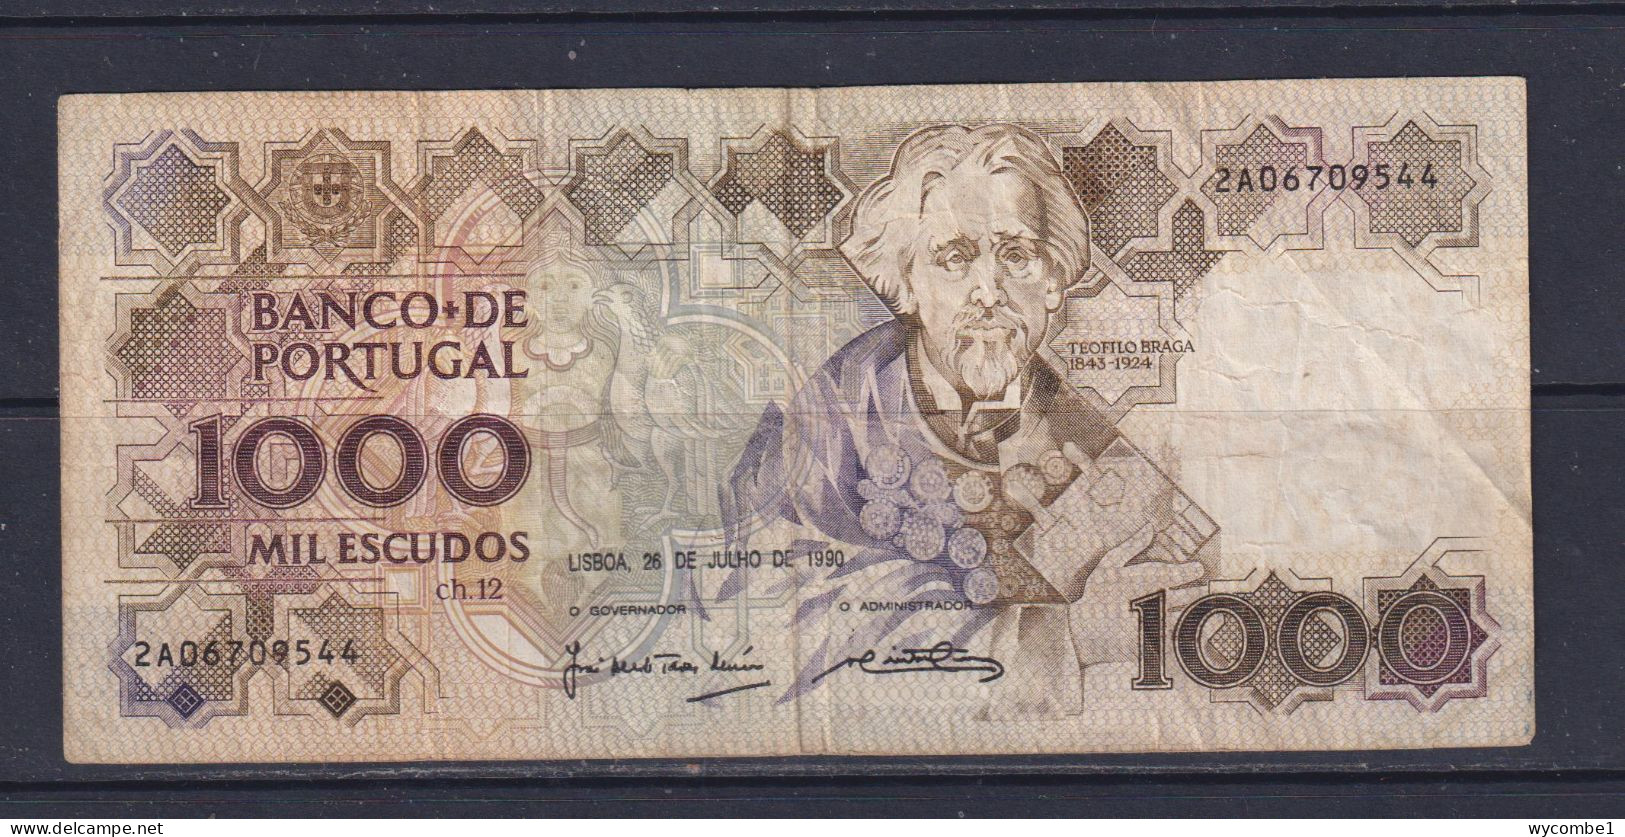 PORTUGAL  - 1990 1000 Escudos Circulated Banknote - Portugal